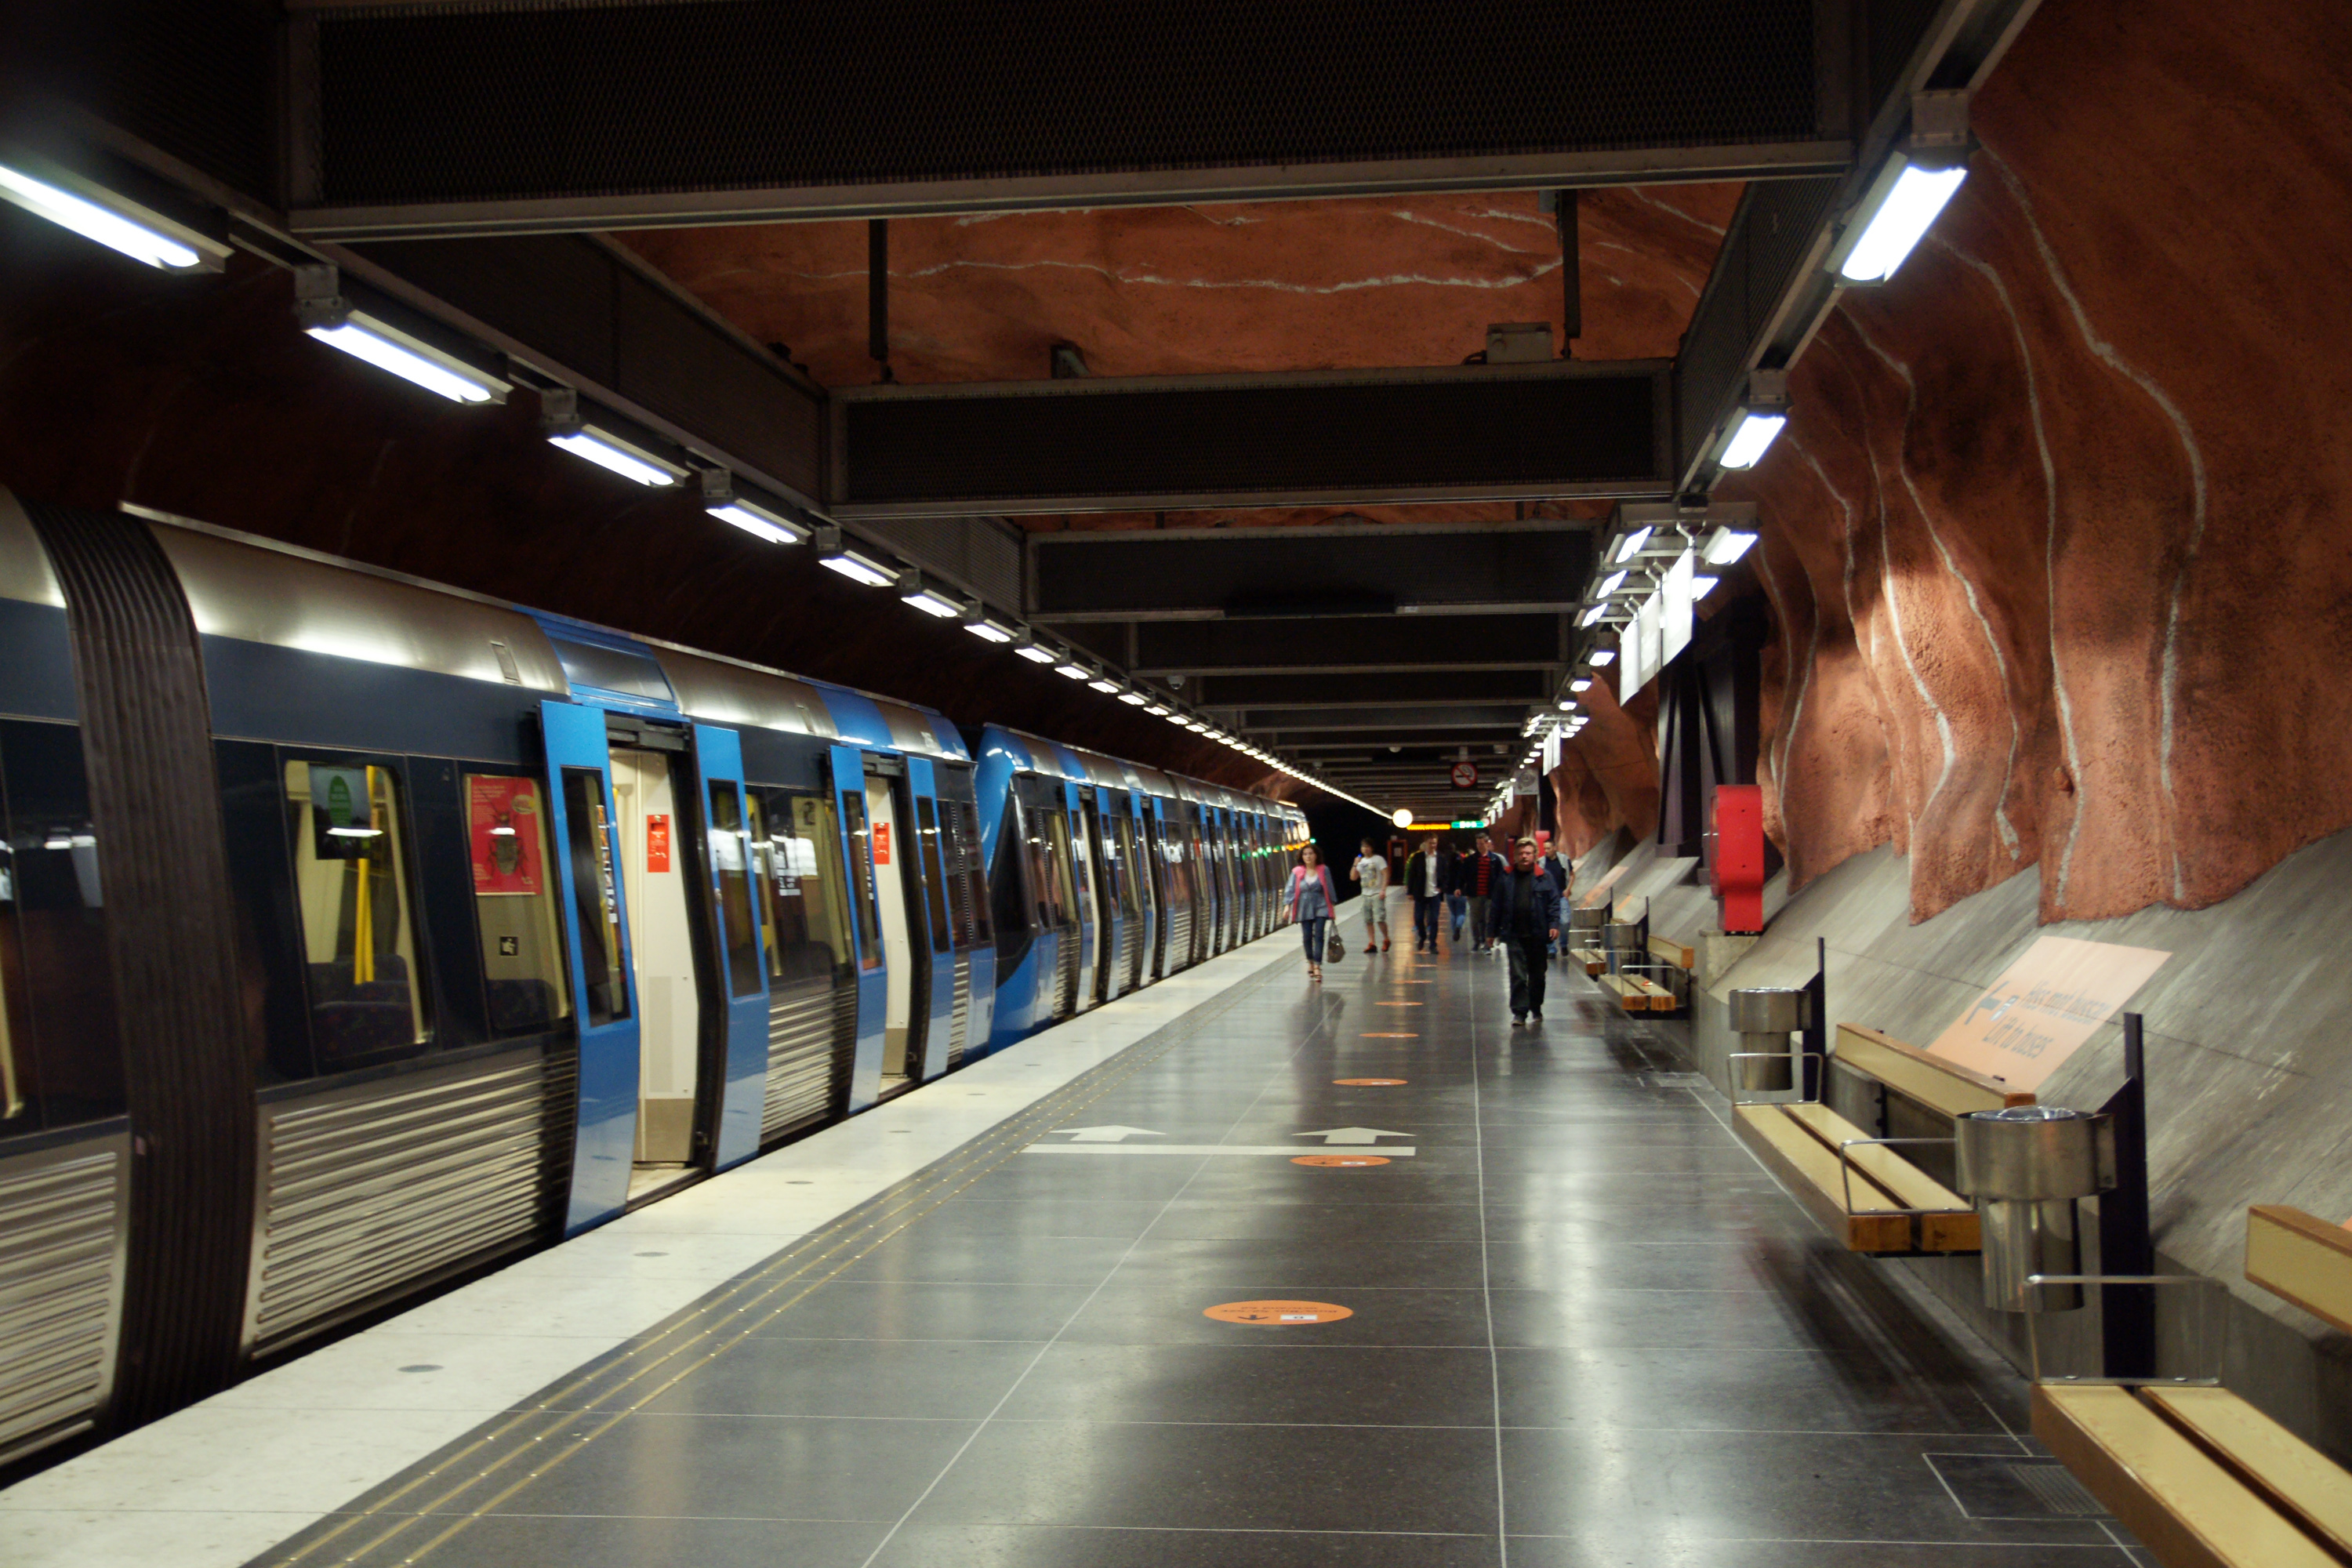 File:Rådhuset metro station 3.jpg - Wikimedia Commons